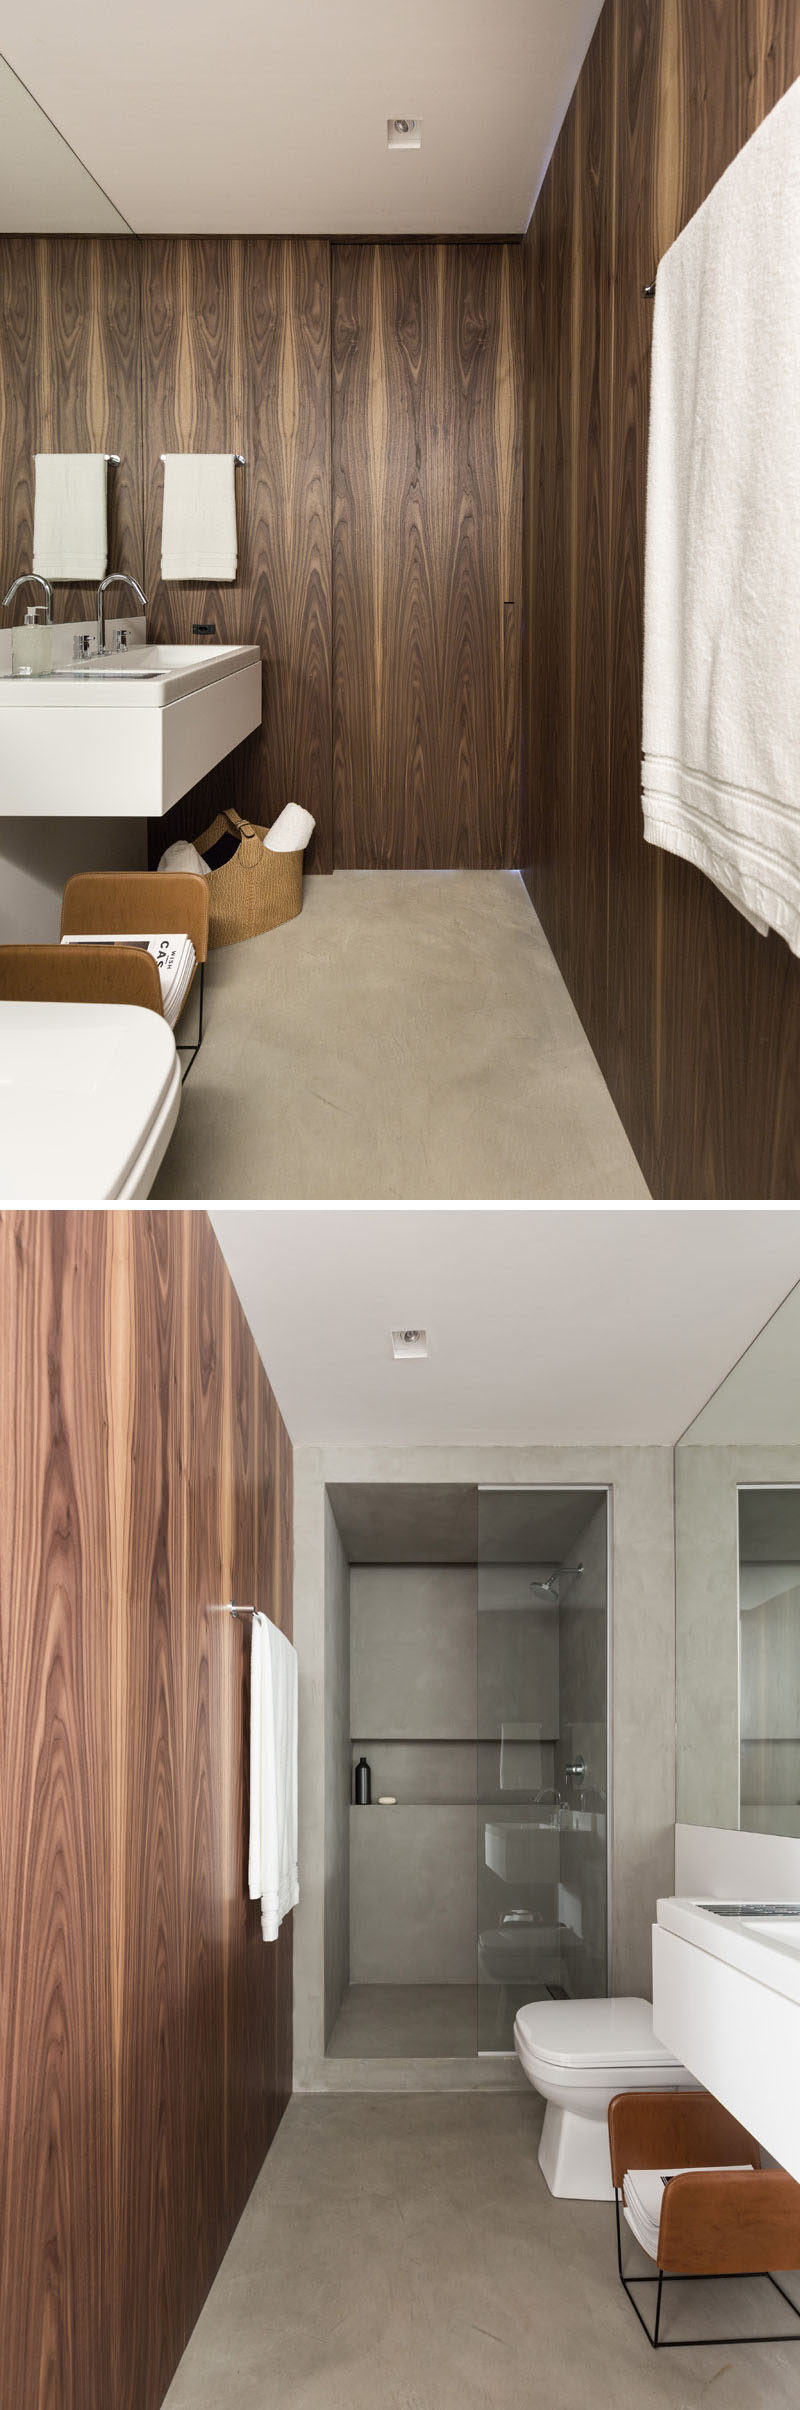 Стены этой ванной комнаты отделаны деревом, а дизайнеры использовали внутри деревянных панелей зеленый влагостойкий МДФ, обеспечивающий прочность и защиту от влаги.